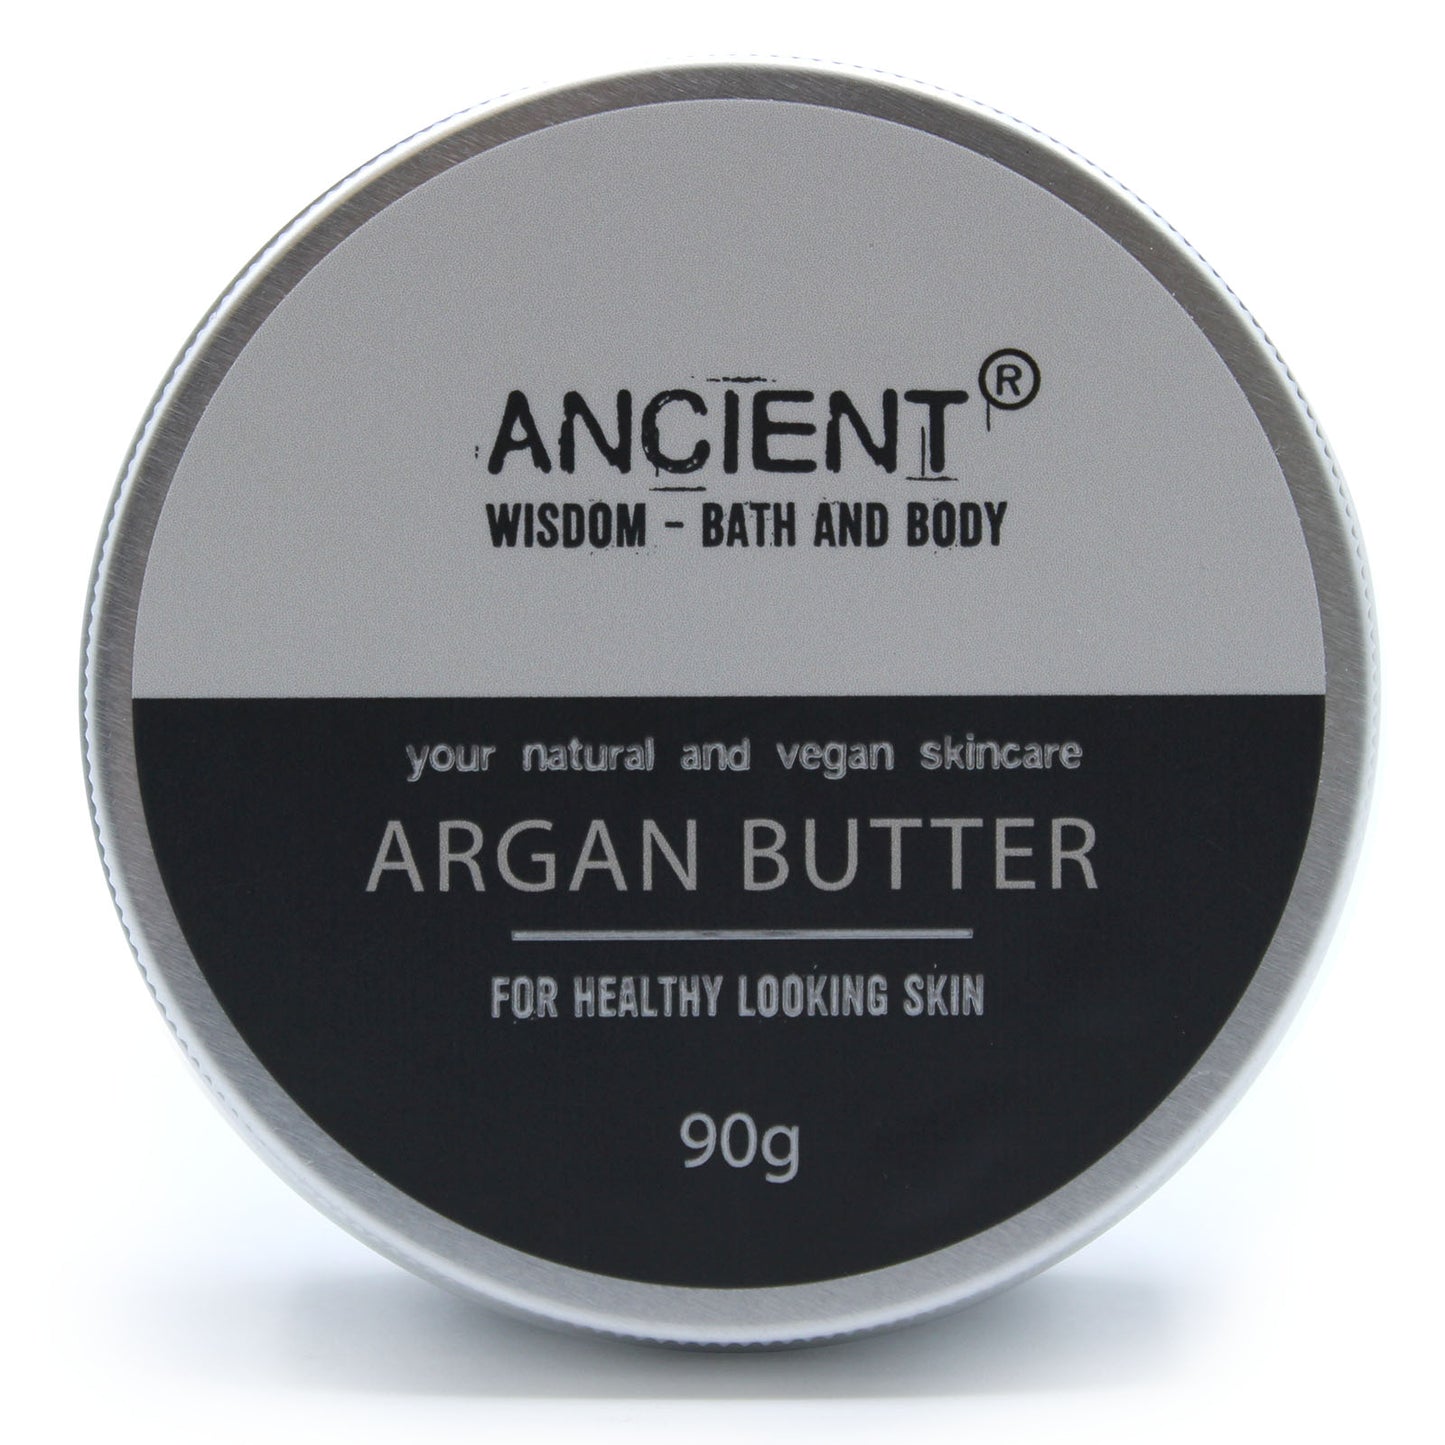 Argan Body Butter